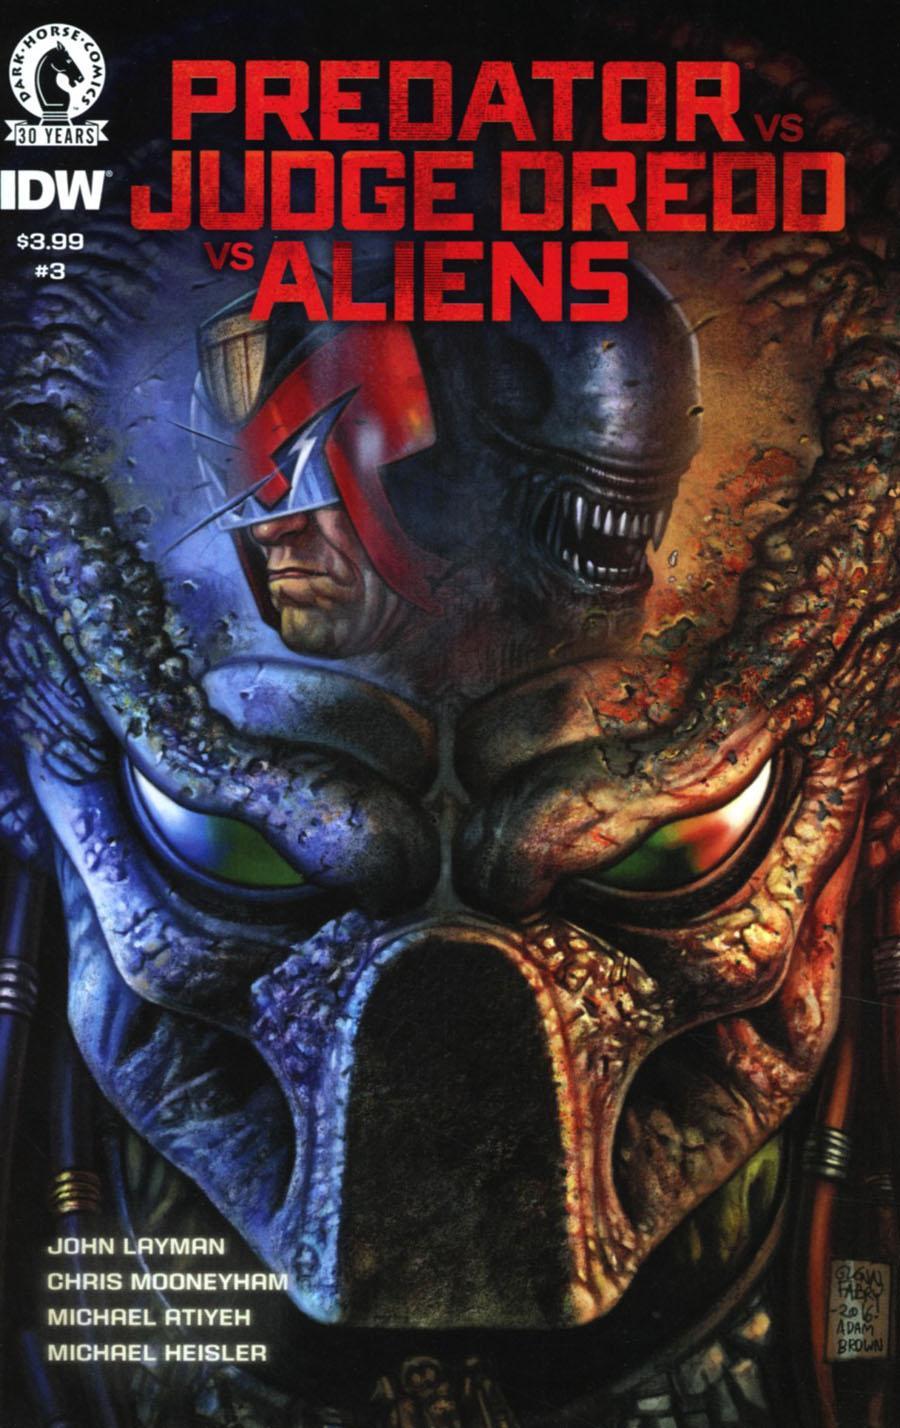 Predator vs Judge Dredd vs Aliens Vol. 1 #3